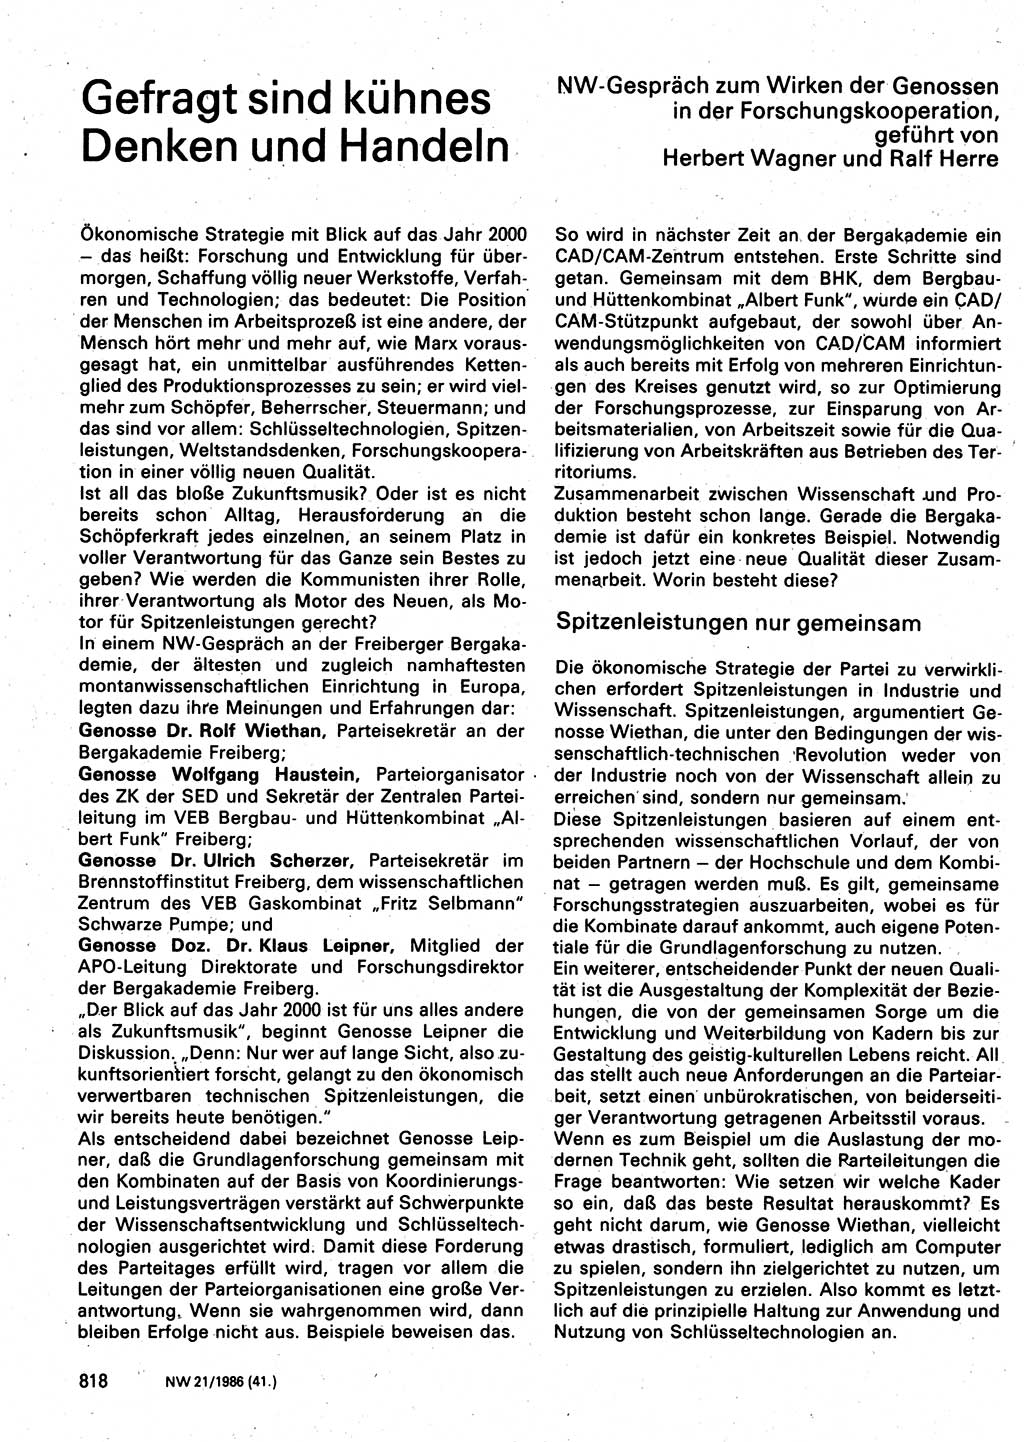 Neuer Weg (NW), Organ des Zentralkomitees (ZK) der SED (Sozialistische Einheitspartei Deutschlands) für Fragen des Parteilebens, 41. Jahrgang [Deutsche Demokratische Republik (DDR)] 1986, Seite 818 (NW ZK SED DDR 1986, S. 818)